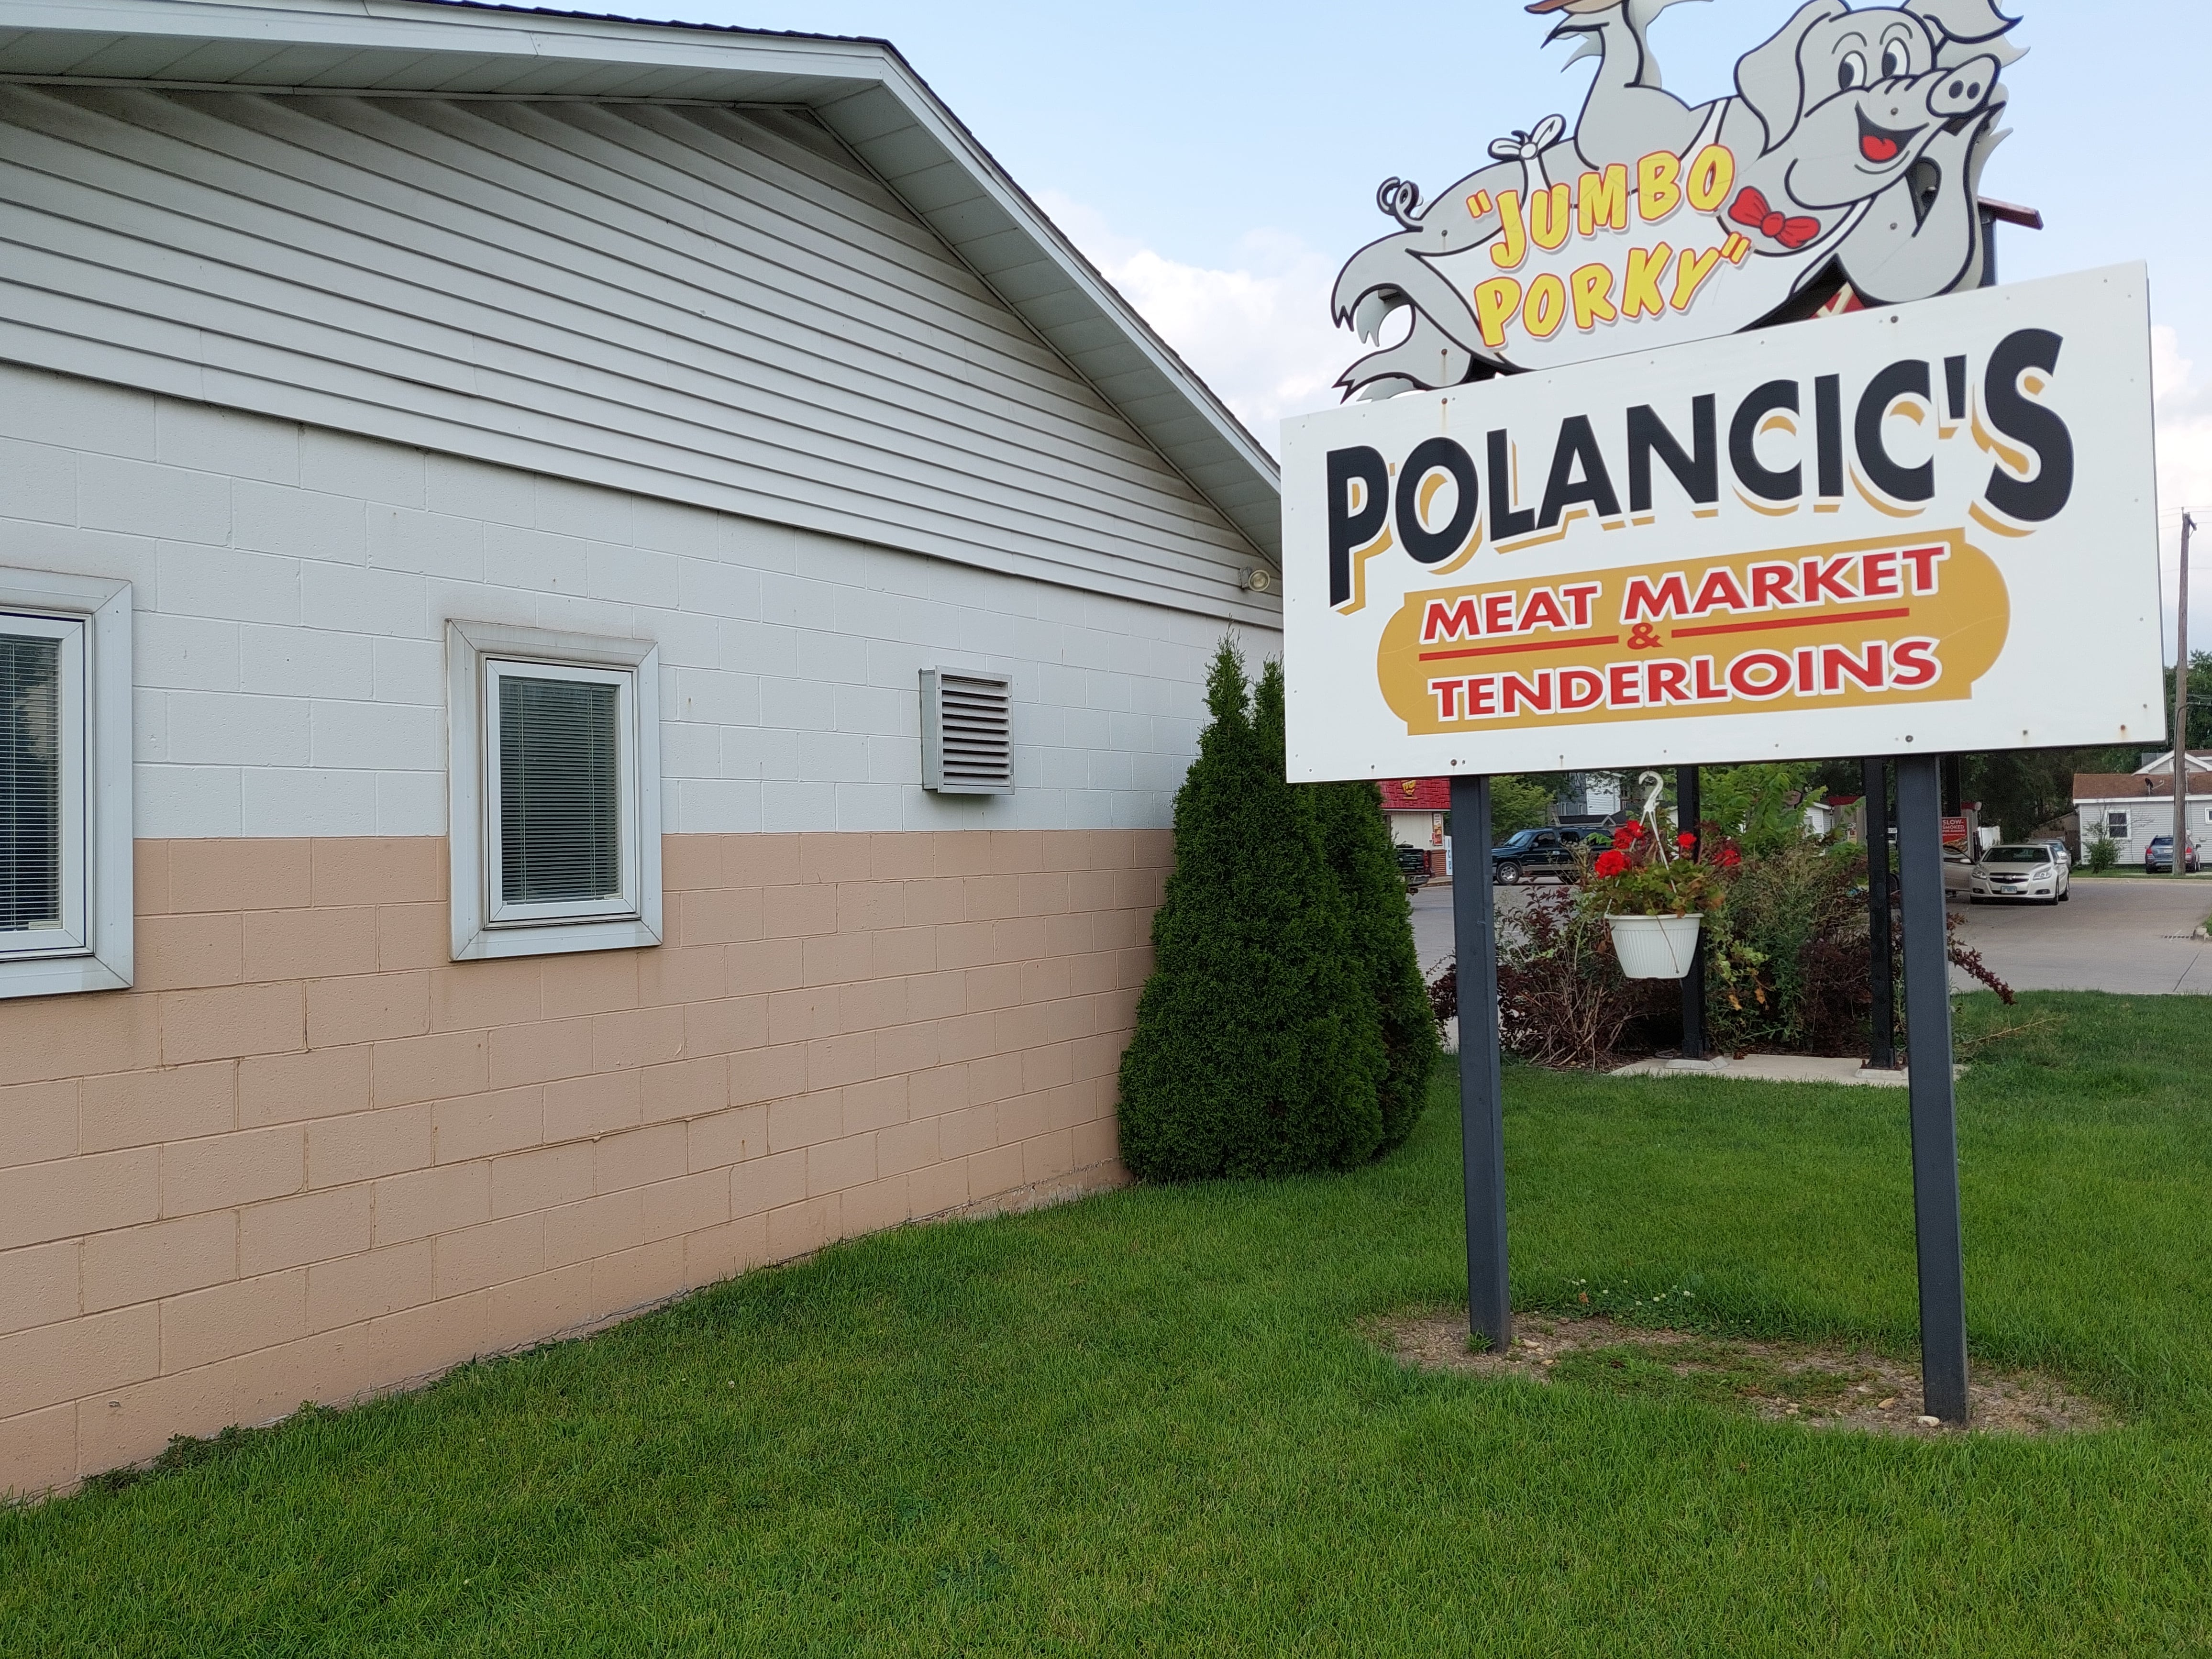 Ottawa’s Polancic pork tenderloins go national